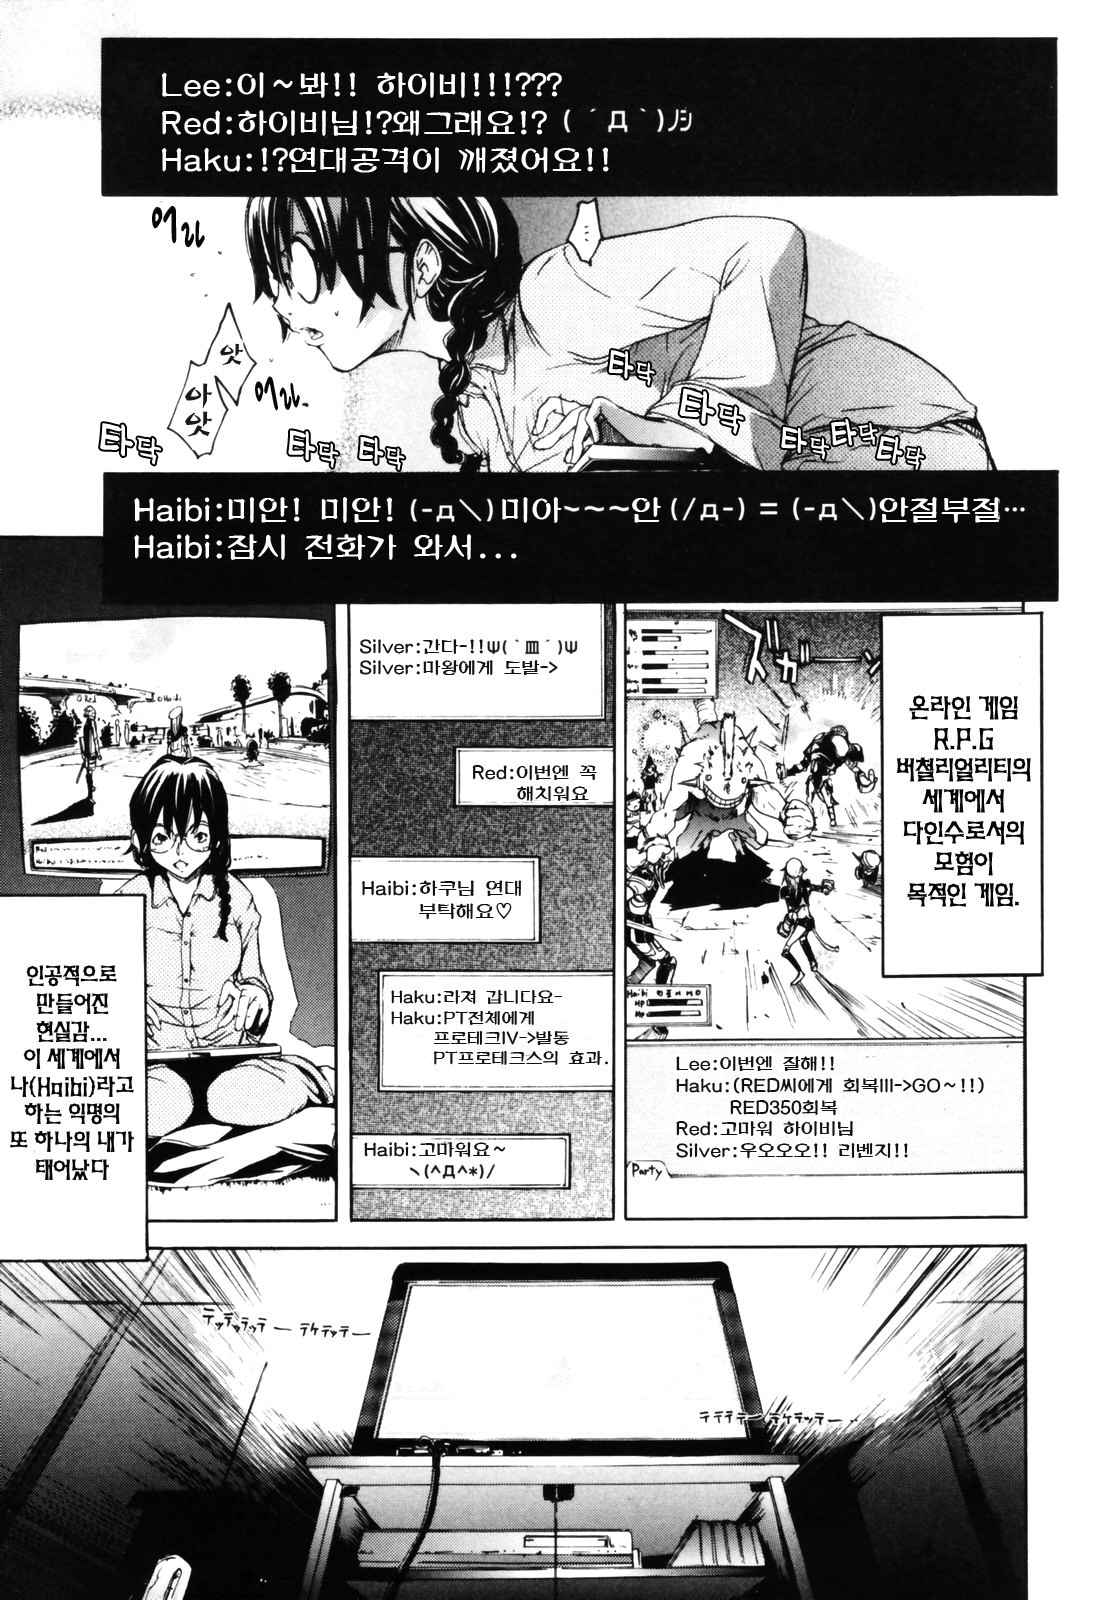 [Kentarou] RPG Role Playing Girl [korean] page 11 full